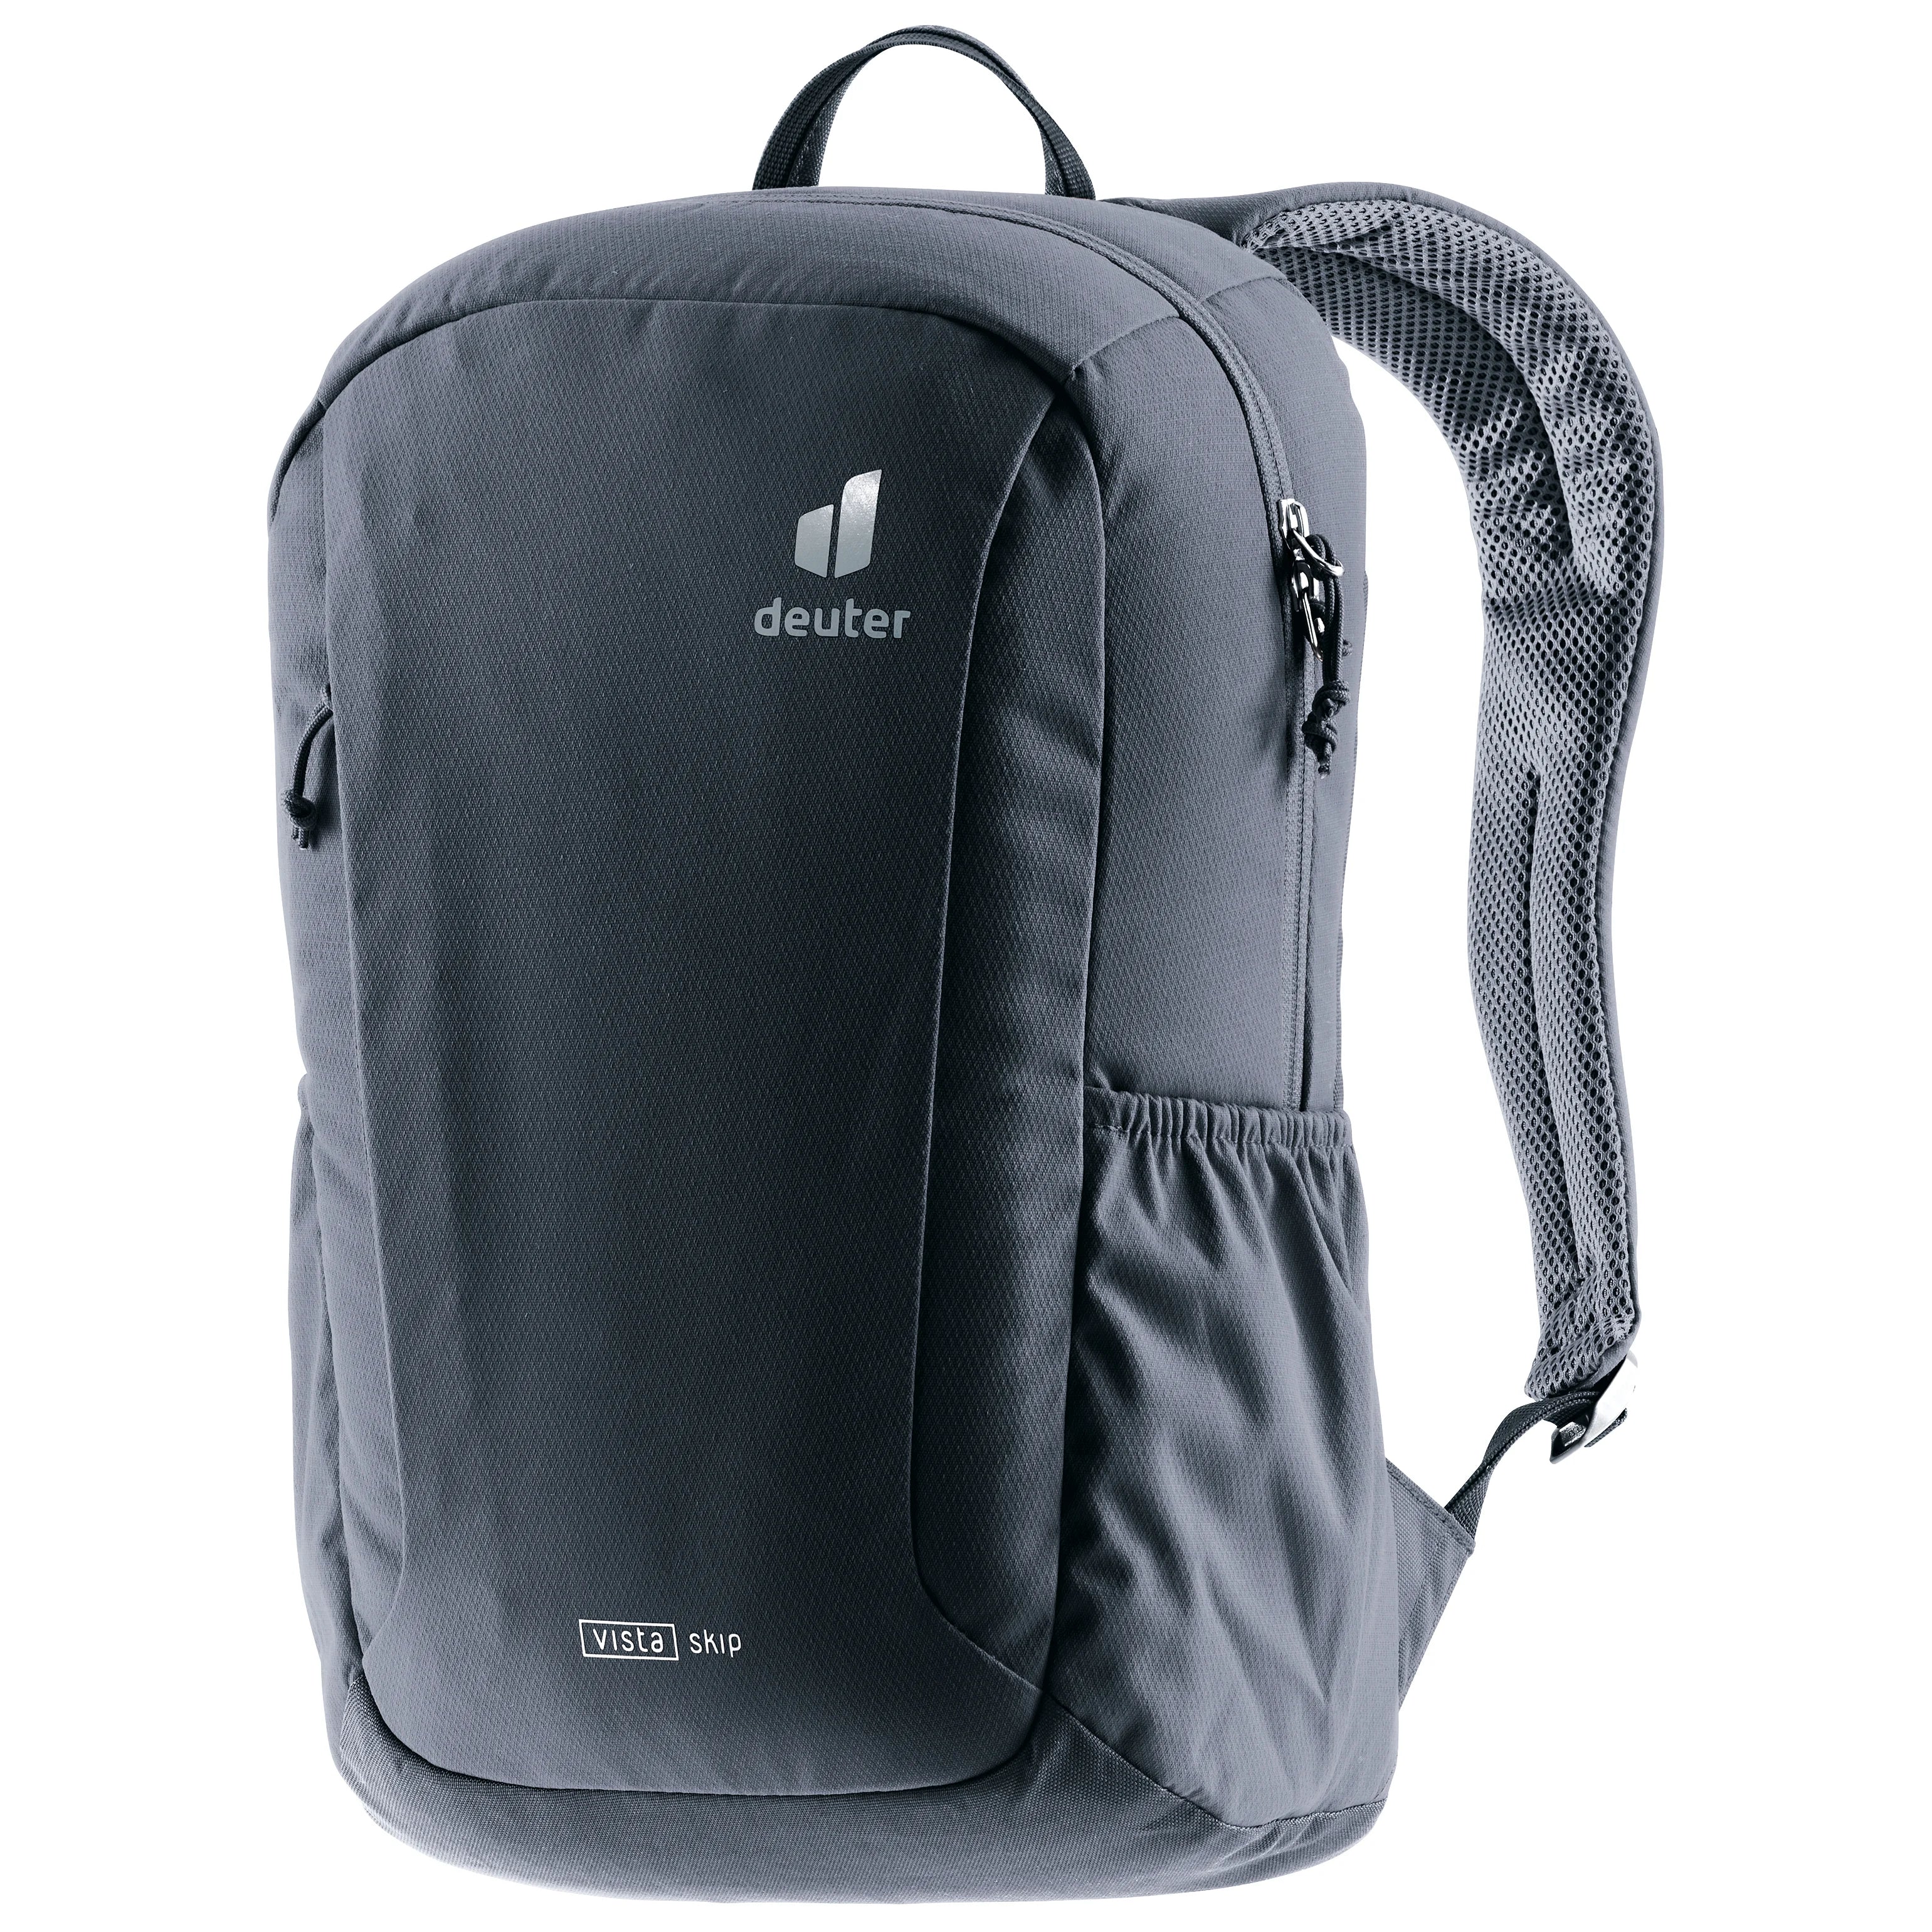 Deuter Daypack Vista Skip Backpack 42 cm - black2